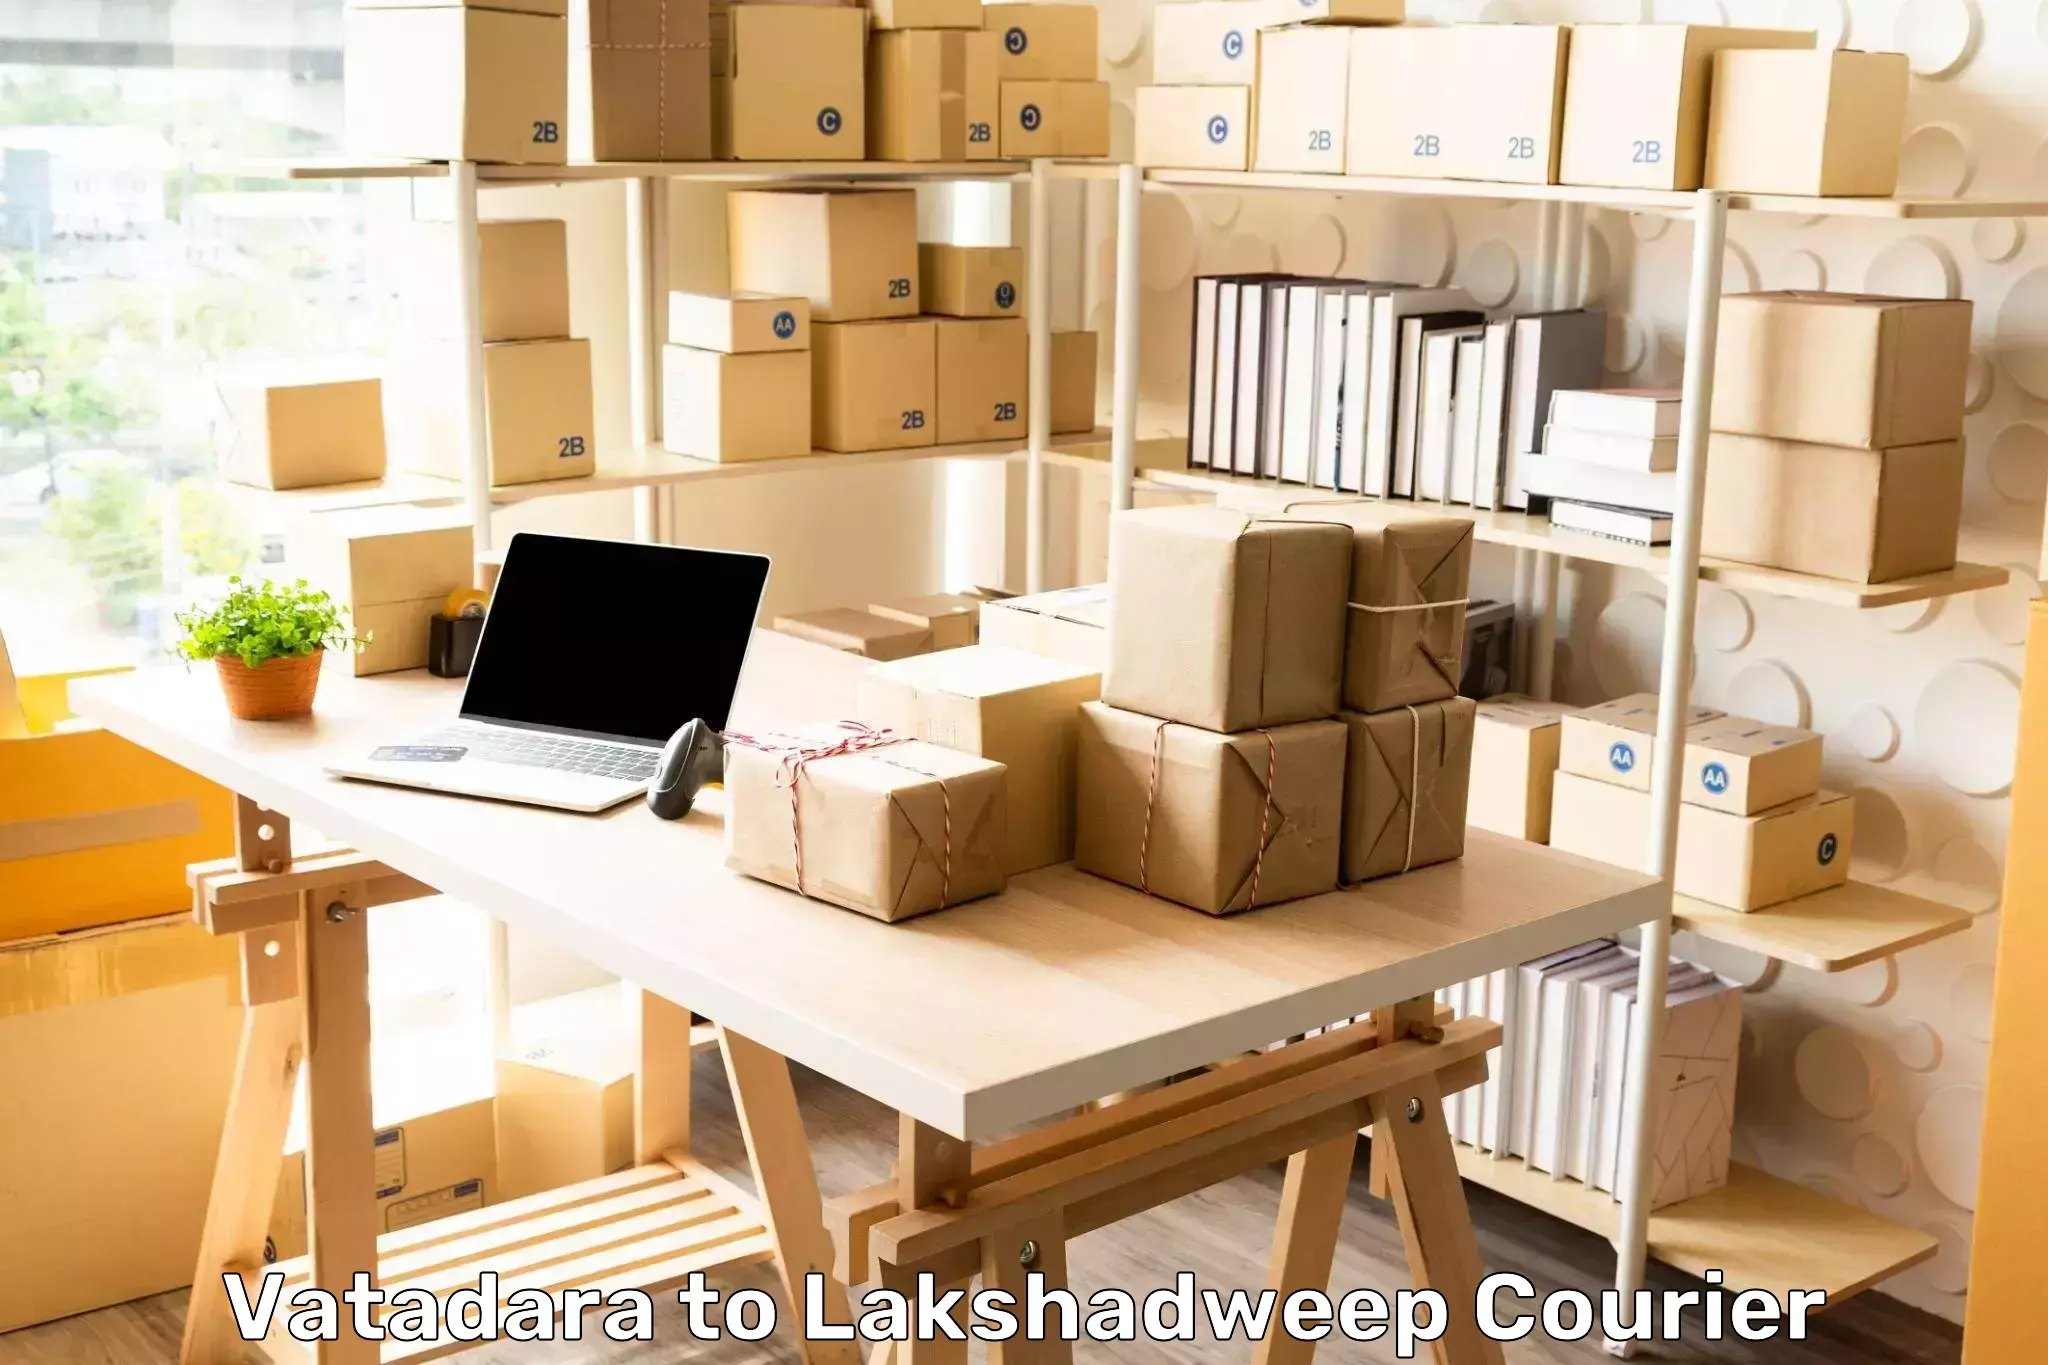 Tech-enabled shipping Vatadara to Lakshadweep